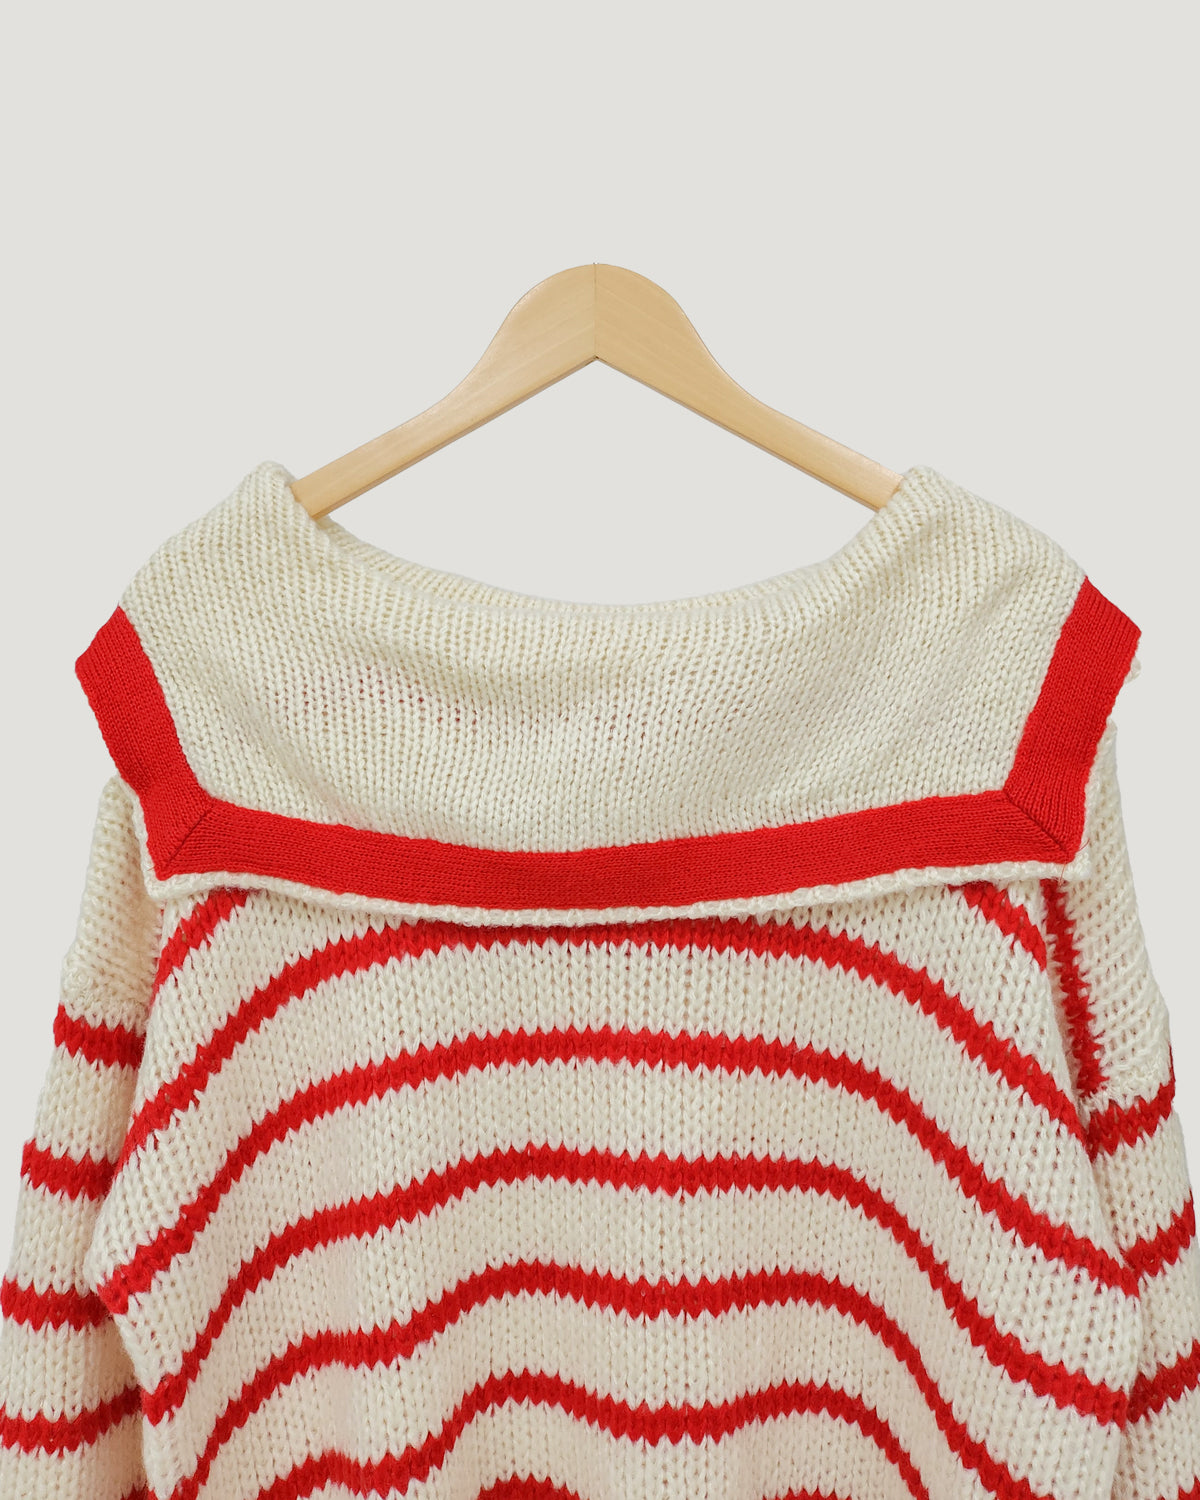 sailor collar stripe overfit knit